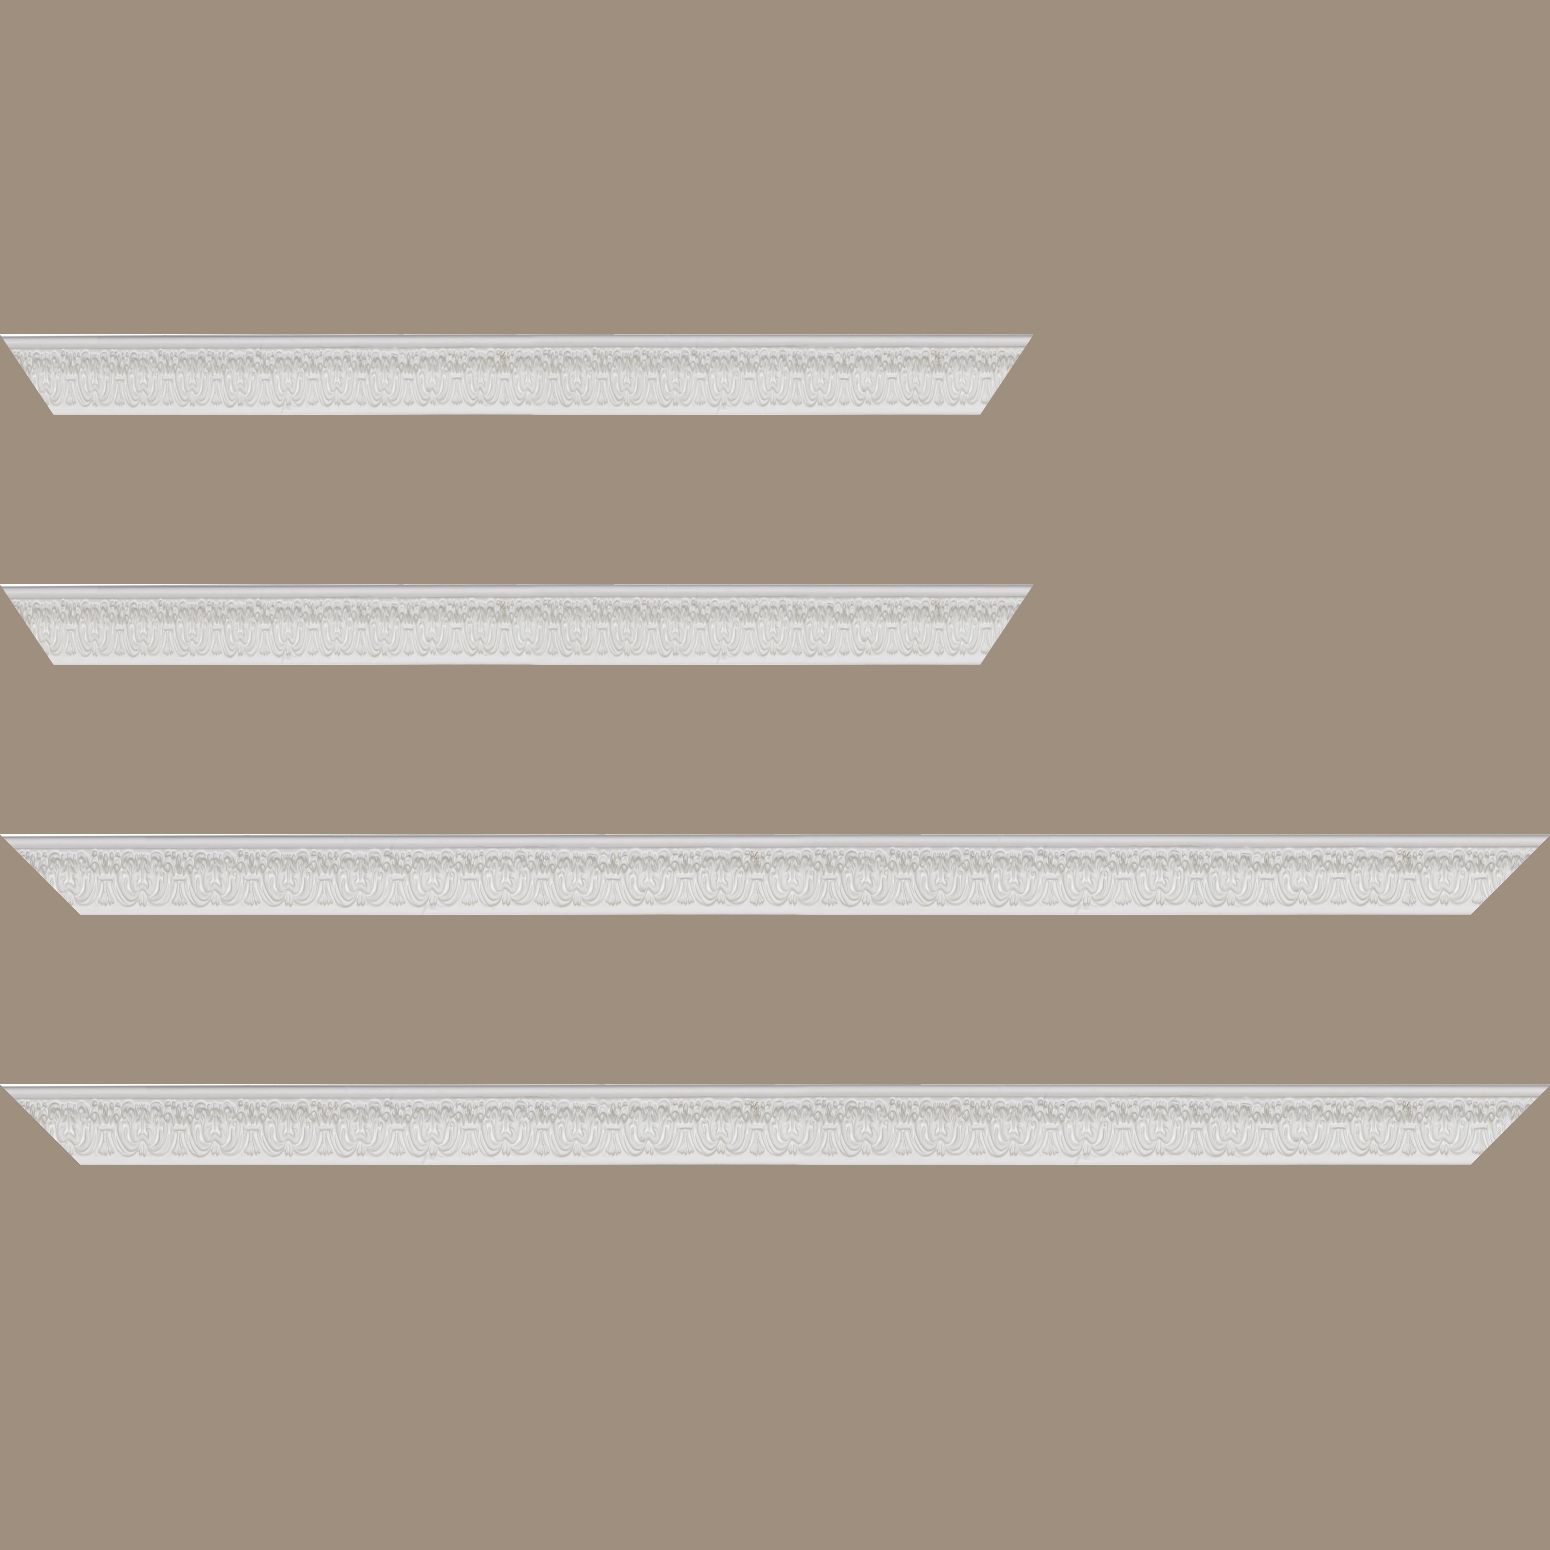 Baguette service précoupé Bois profil incurvé largeur 2.6cm couleur blanc en relief sur fond blanc